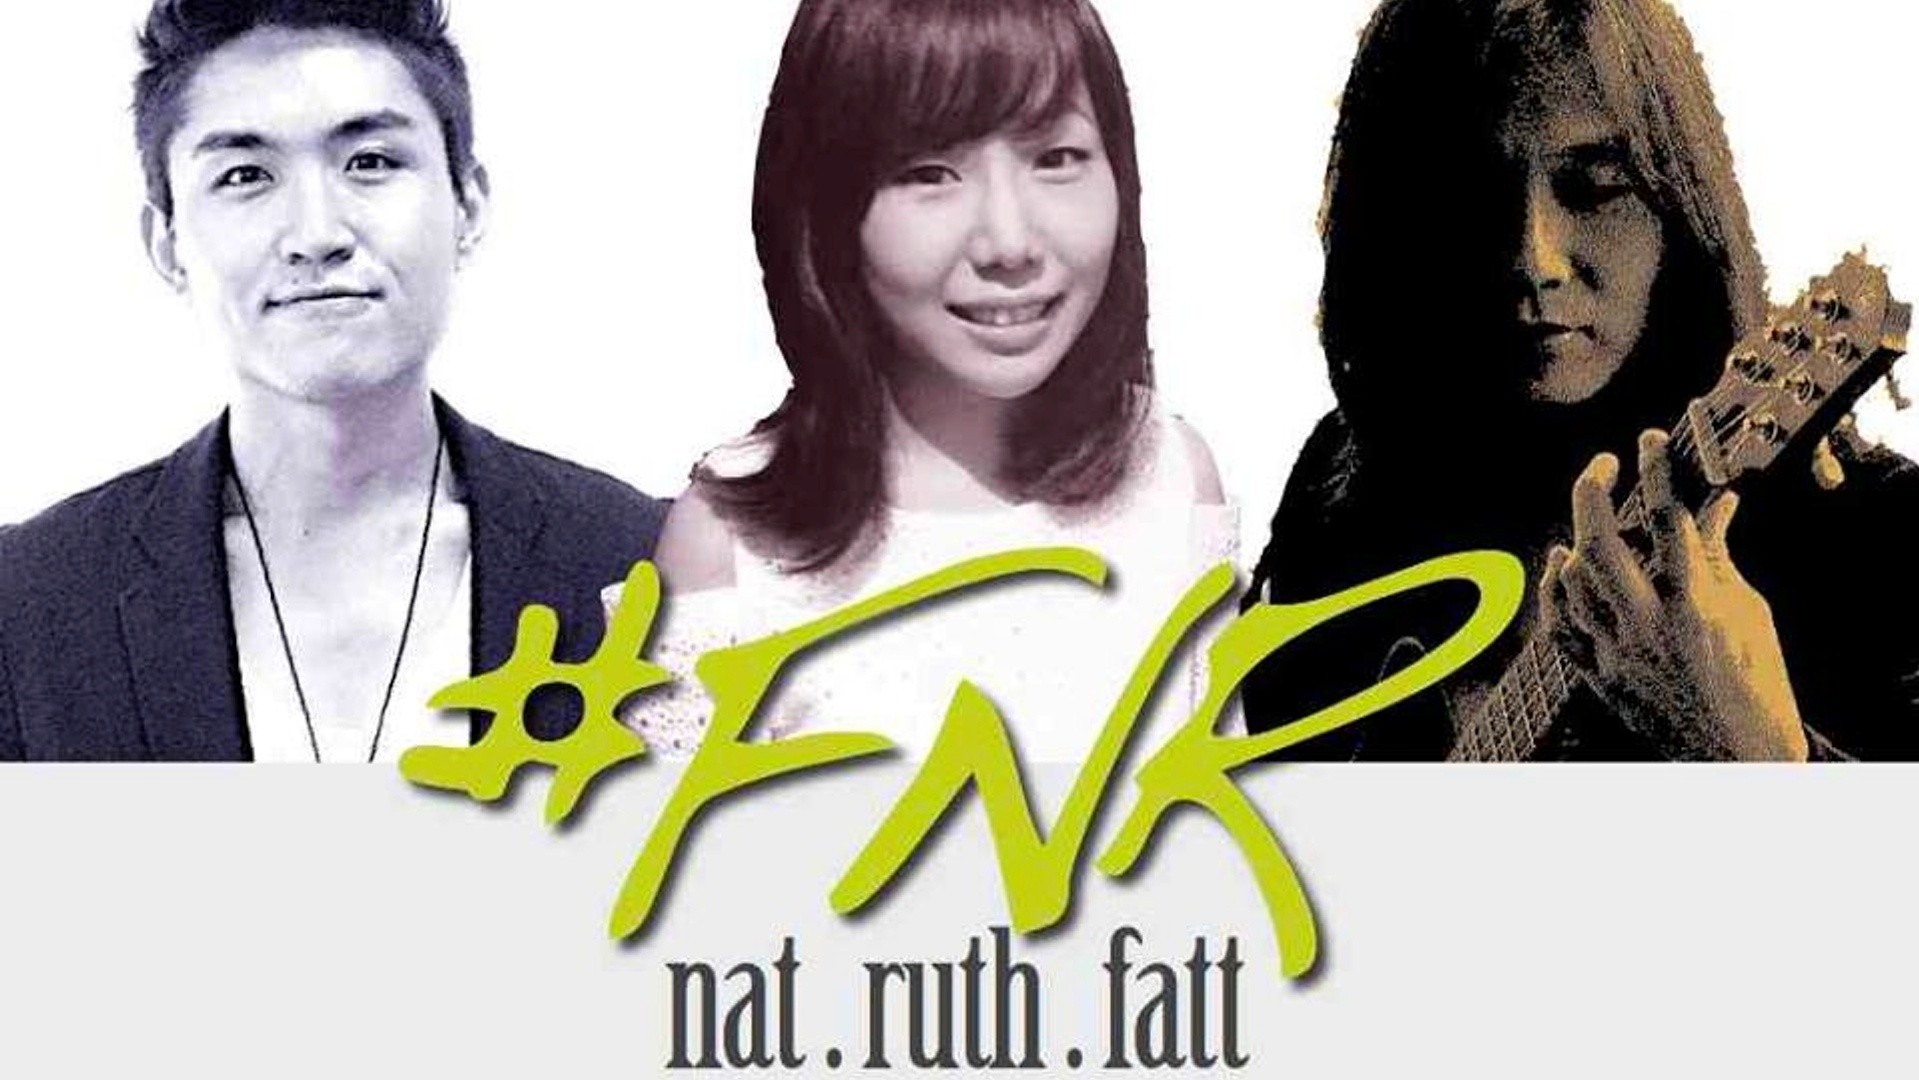 Ruth, Fatt & Nat